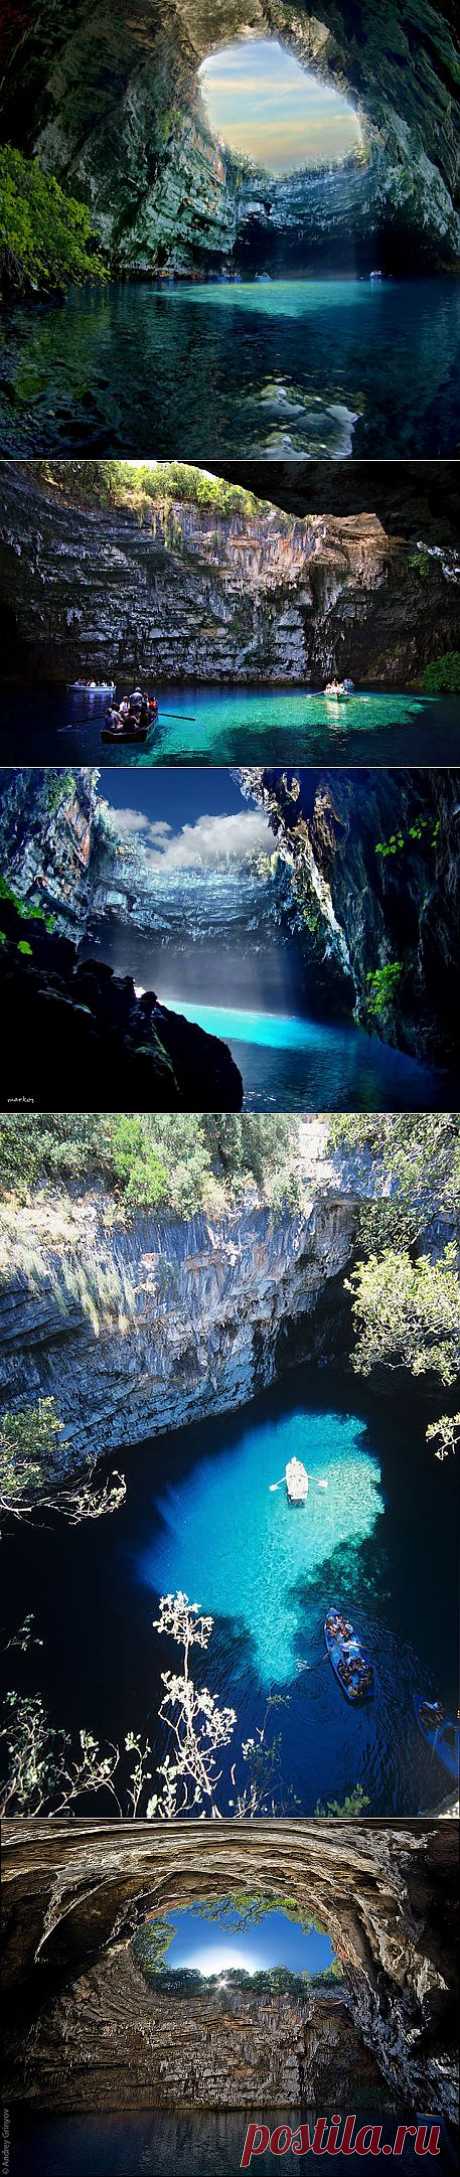 Пещерное озеро Мелиссани в Греции. Мелиссани - это название пещеры и озера, расположенных на восточном побережье греческого острова Кефалония.  В центре пещеры Мелиссани находится изумительно-красивое подземное озеро, возраст которого достигает 20 тысяч лет. Его кристально чистые бирюзовые воды в обрамлении изумрудных зарослей создают здесь поистине сказочную атмосферу. Неудивительно, что древние греки считали это место обителью нимф.